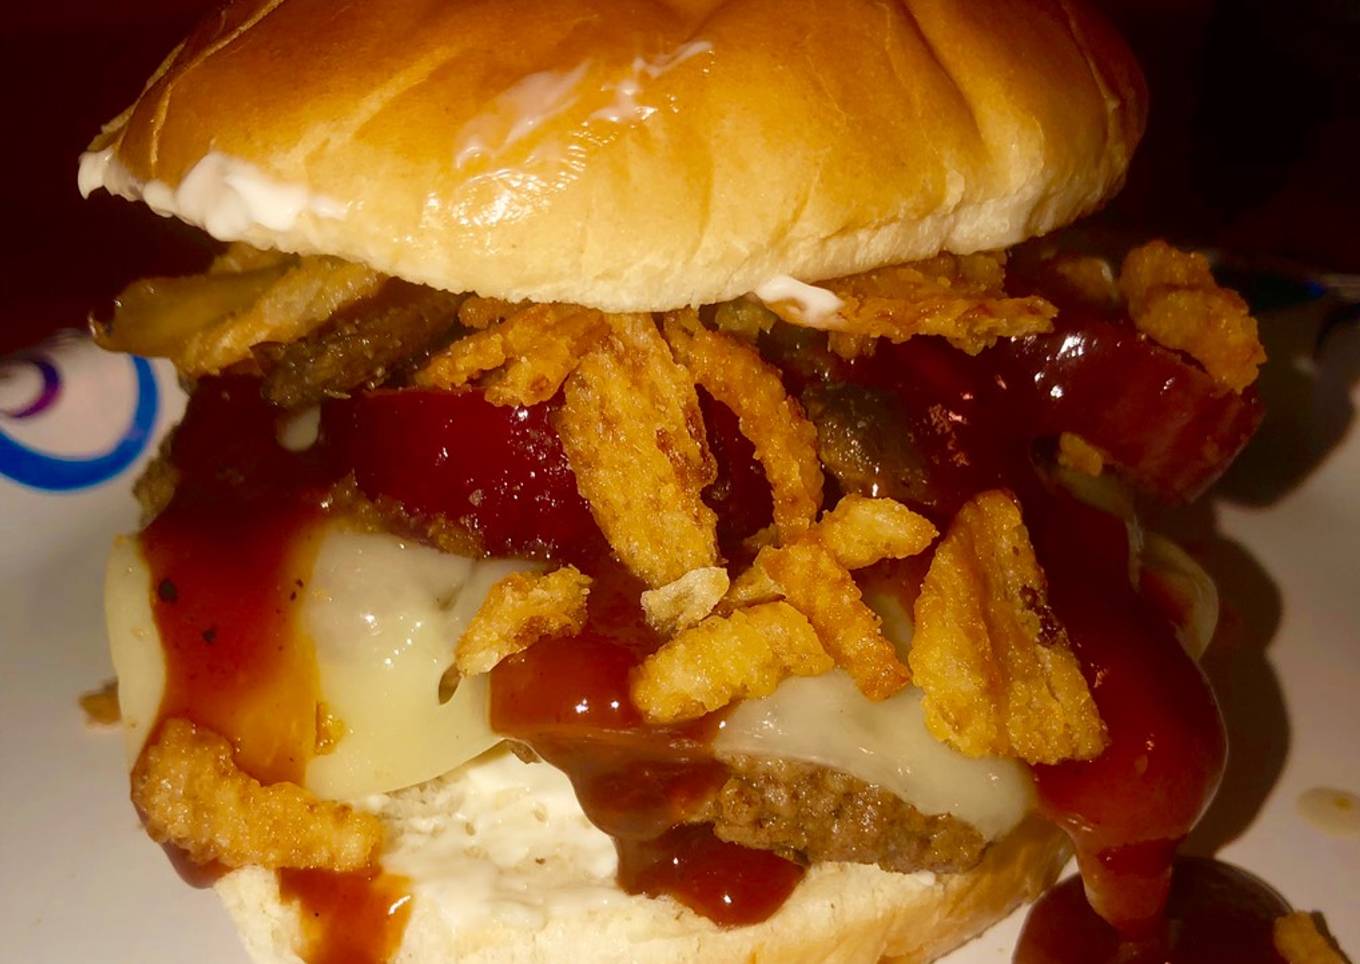 All jacked up shroom nâ€™ Swiss burger ðŸ” ðŸ„ ðŸ§€